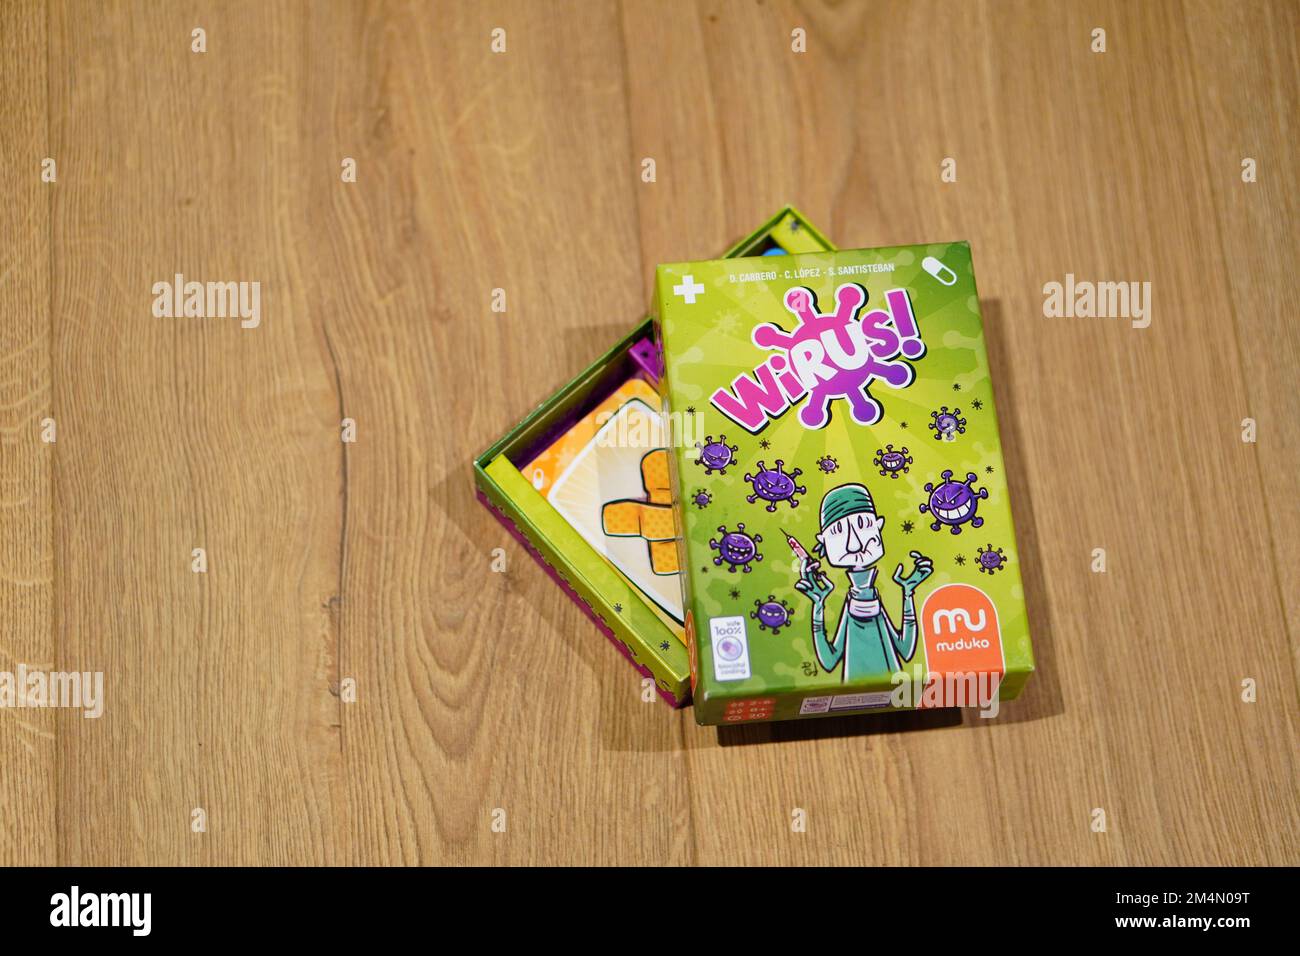 Une édition polonaise du jeu de cartes virus imprimé sous le nom de Wirus sur un plancher en bois Banque D'Images